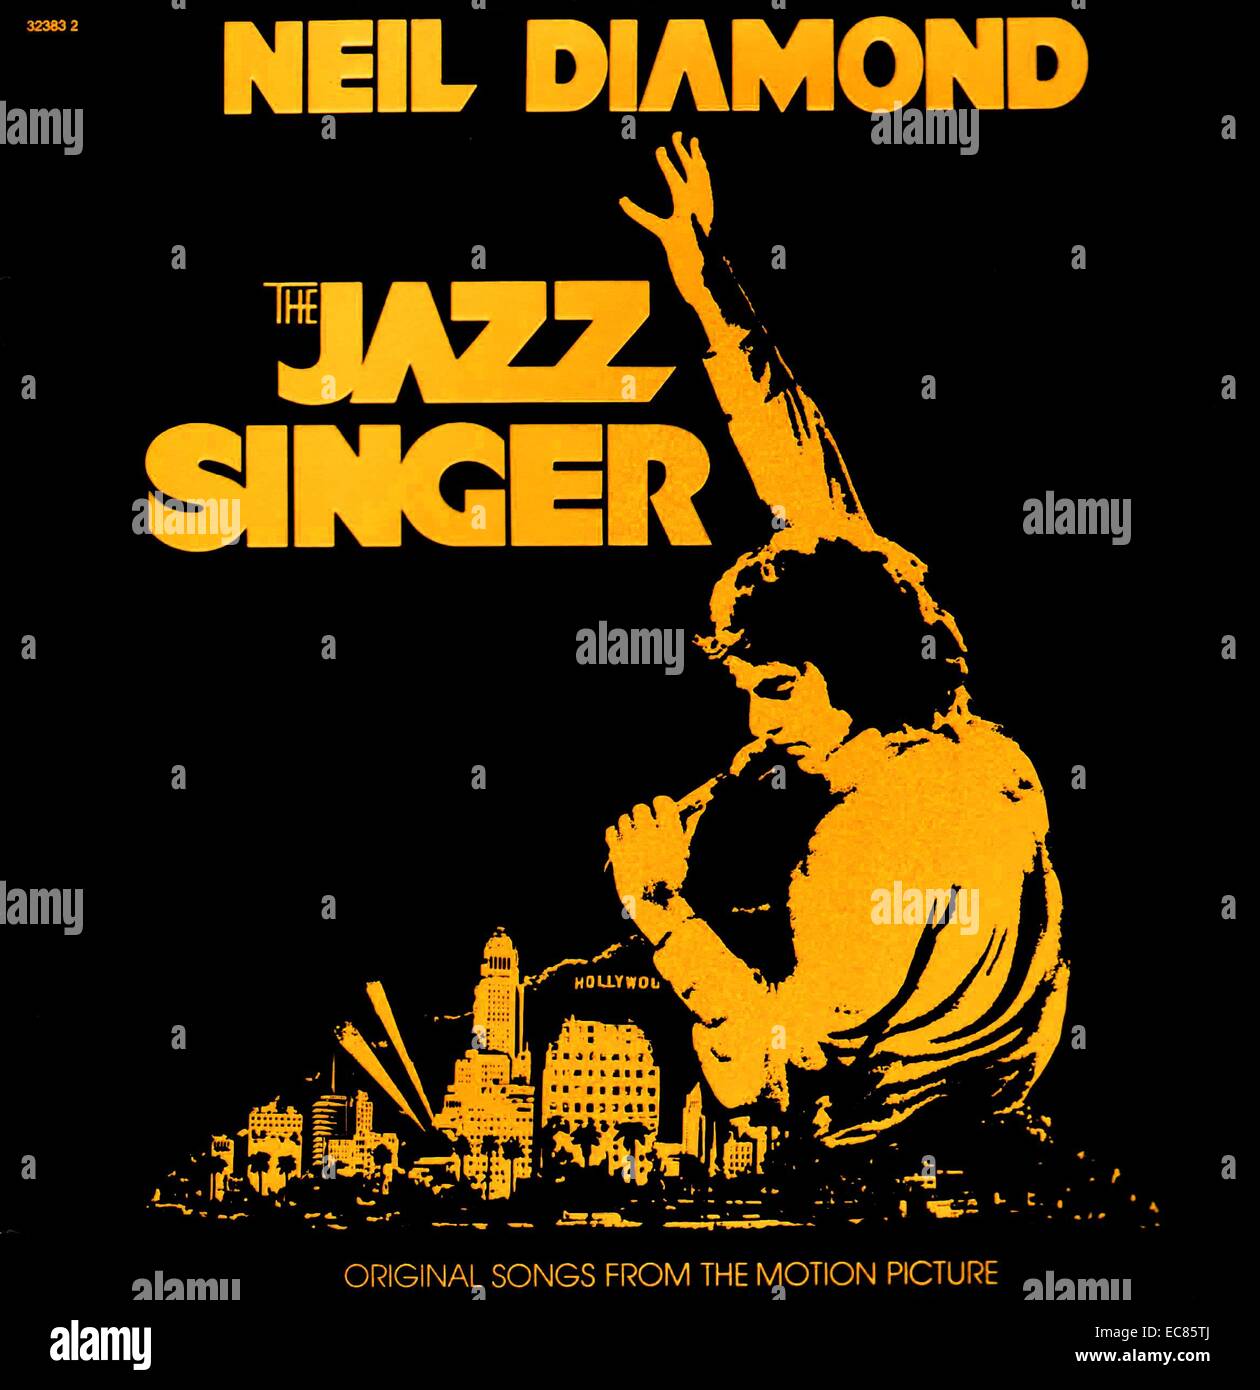 Le Chanteur de jazz est un film américain de 1980 et d'un remake du classique de 1927 The Jazz Singer ; publié par EMI Films et United Artists. Il a tenu le Neil Diamond, Laurence Olivier et Lucie Arnaz et a été co-réalisé par Richard Fleischer et de Sidney J. FURIE. Banque D'Images